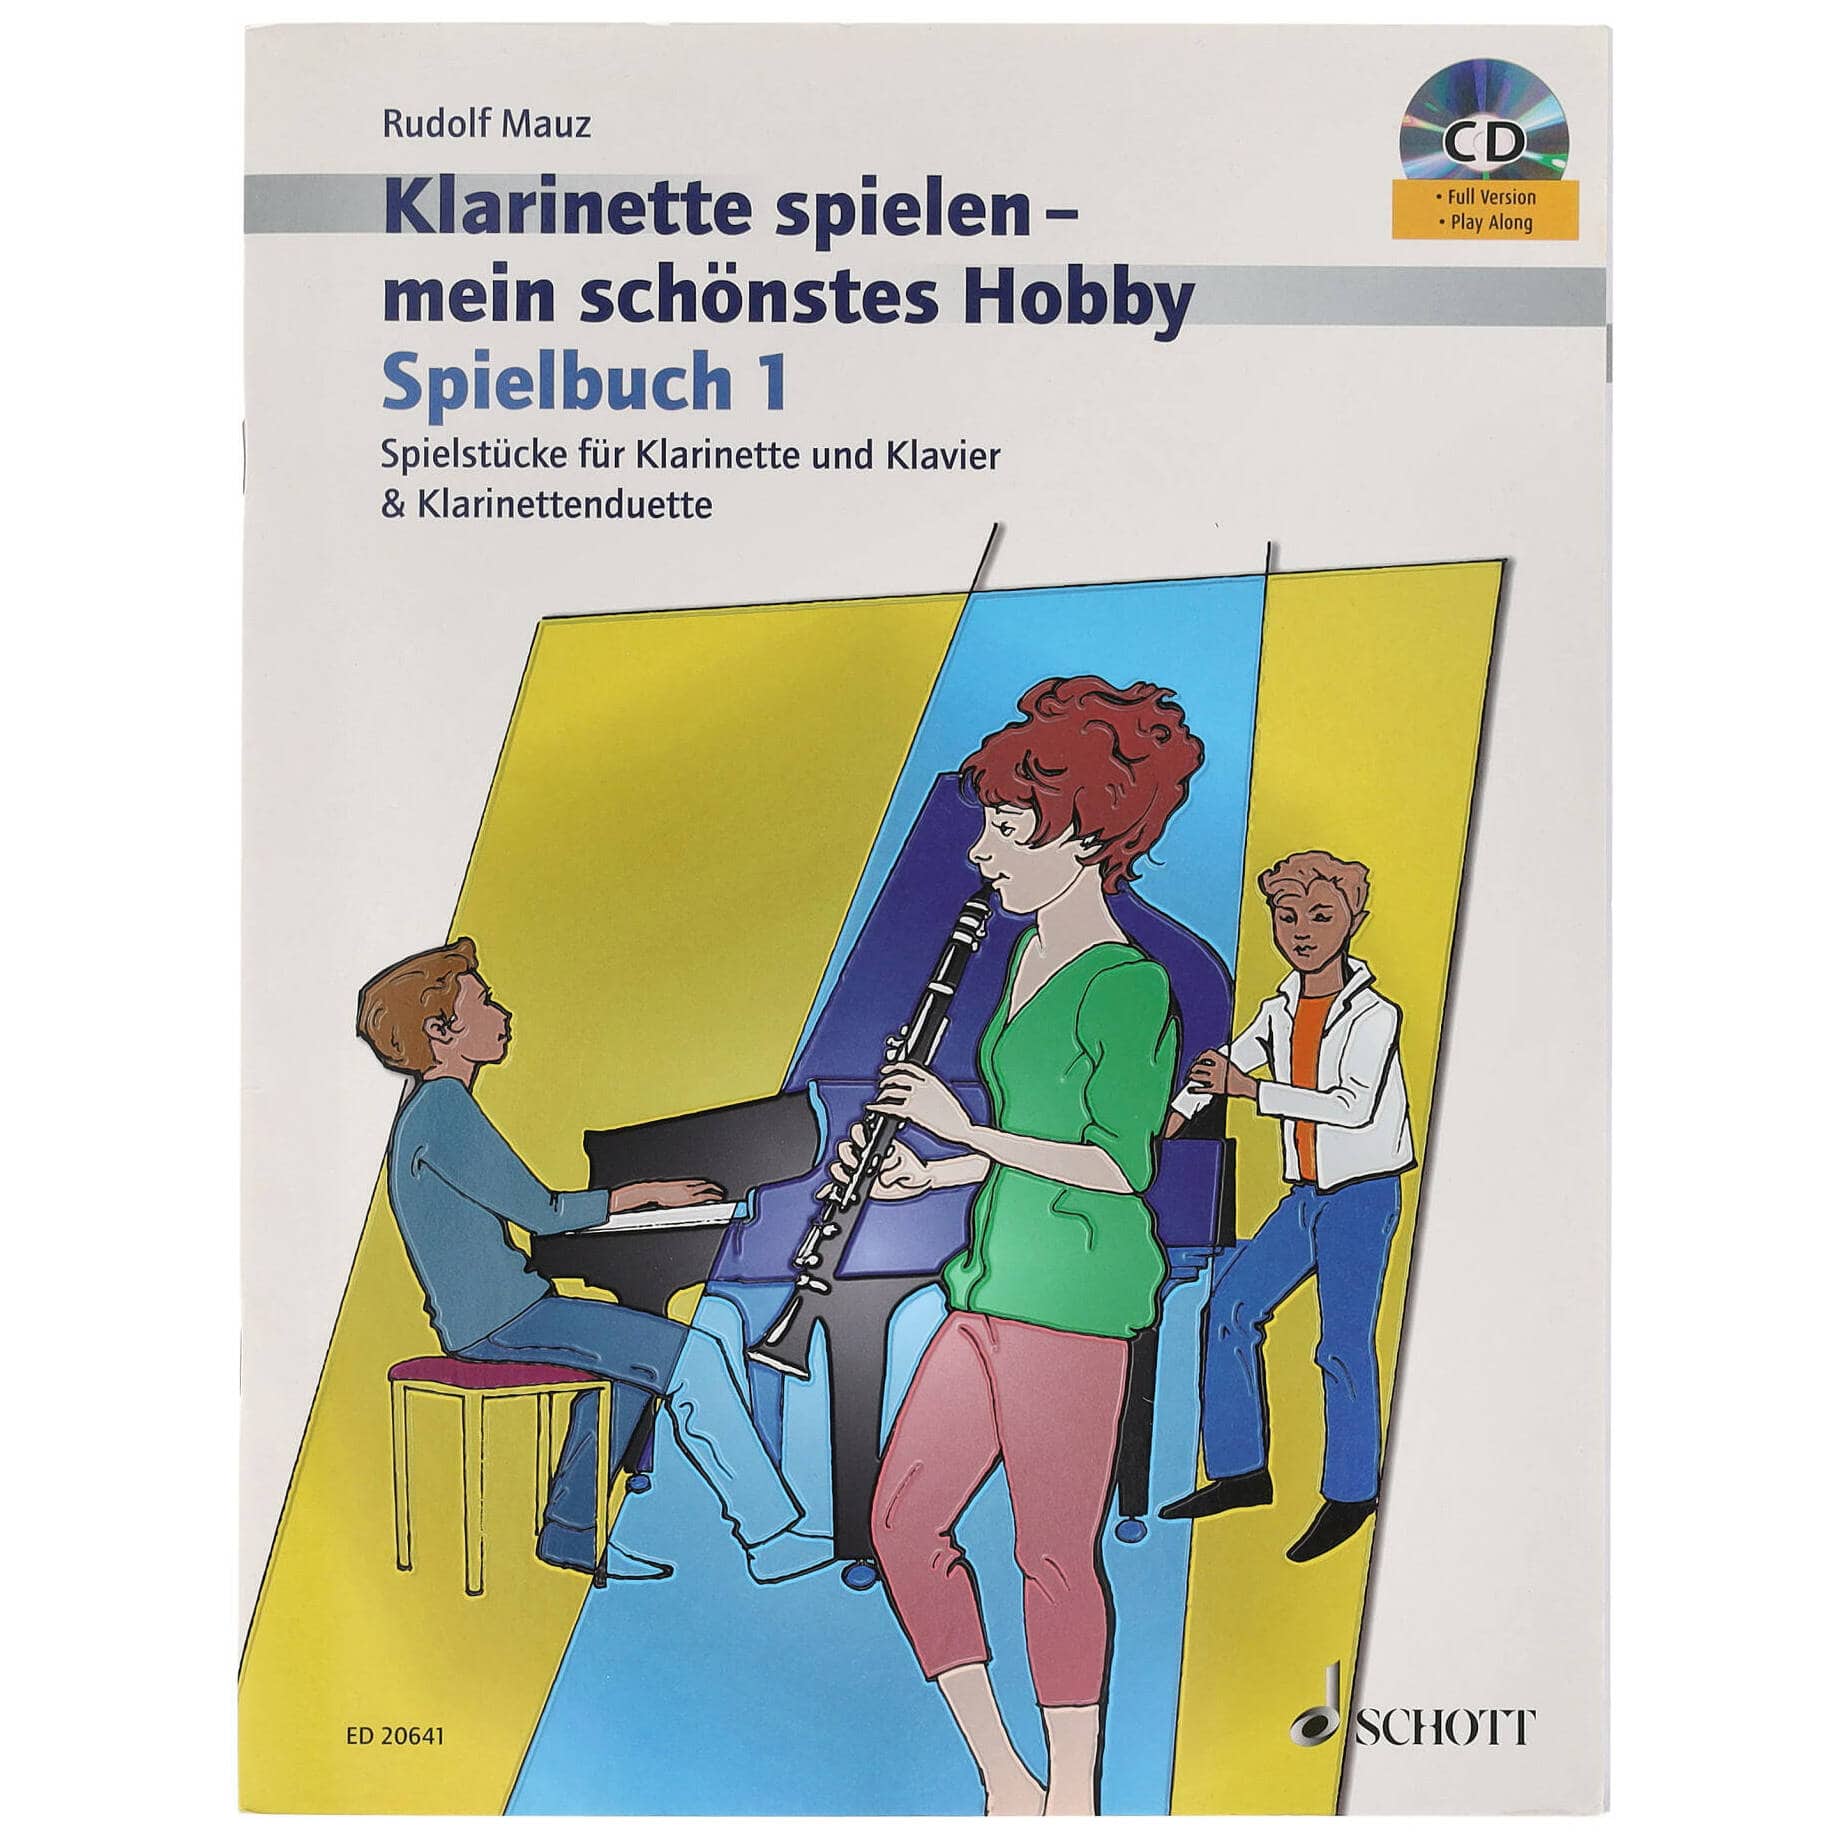 Schott Rudolf Mauz - Klarinette spielen - mein schönstes Hobby - Spielbuch 1